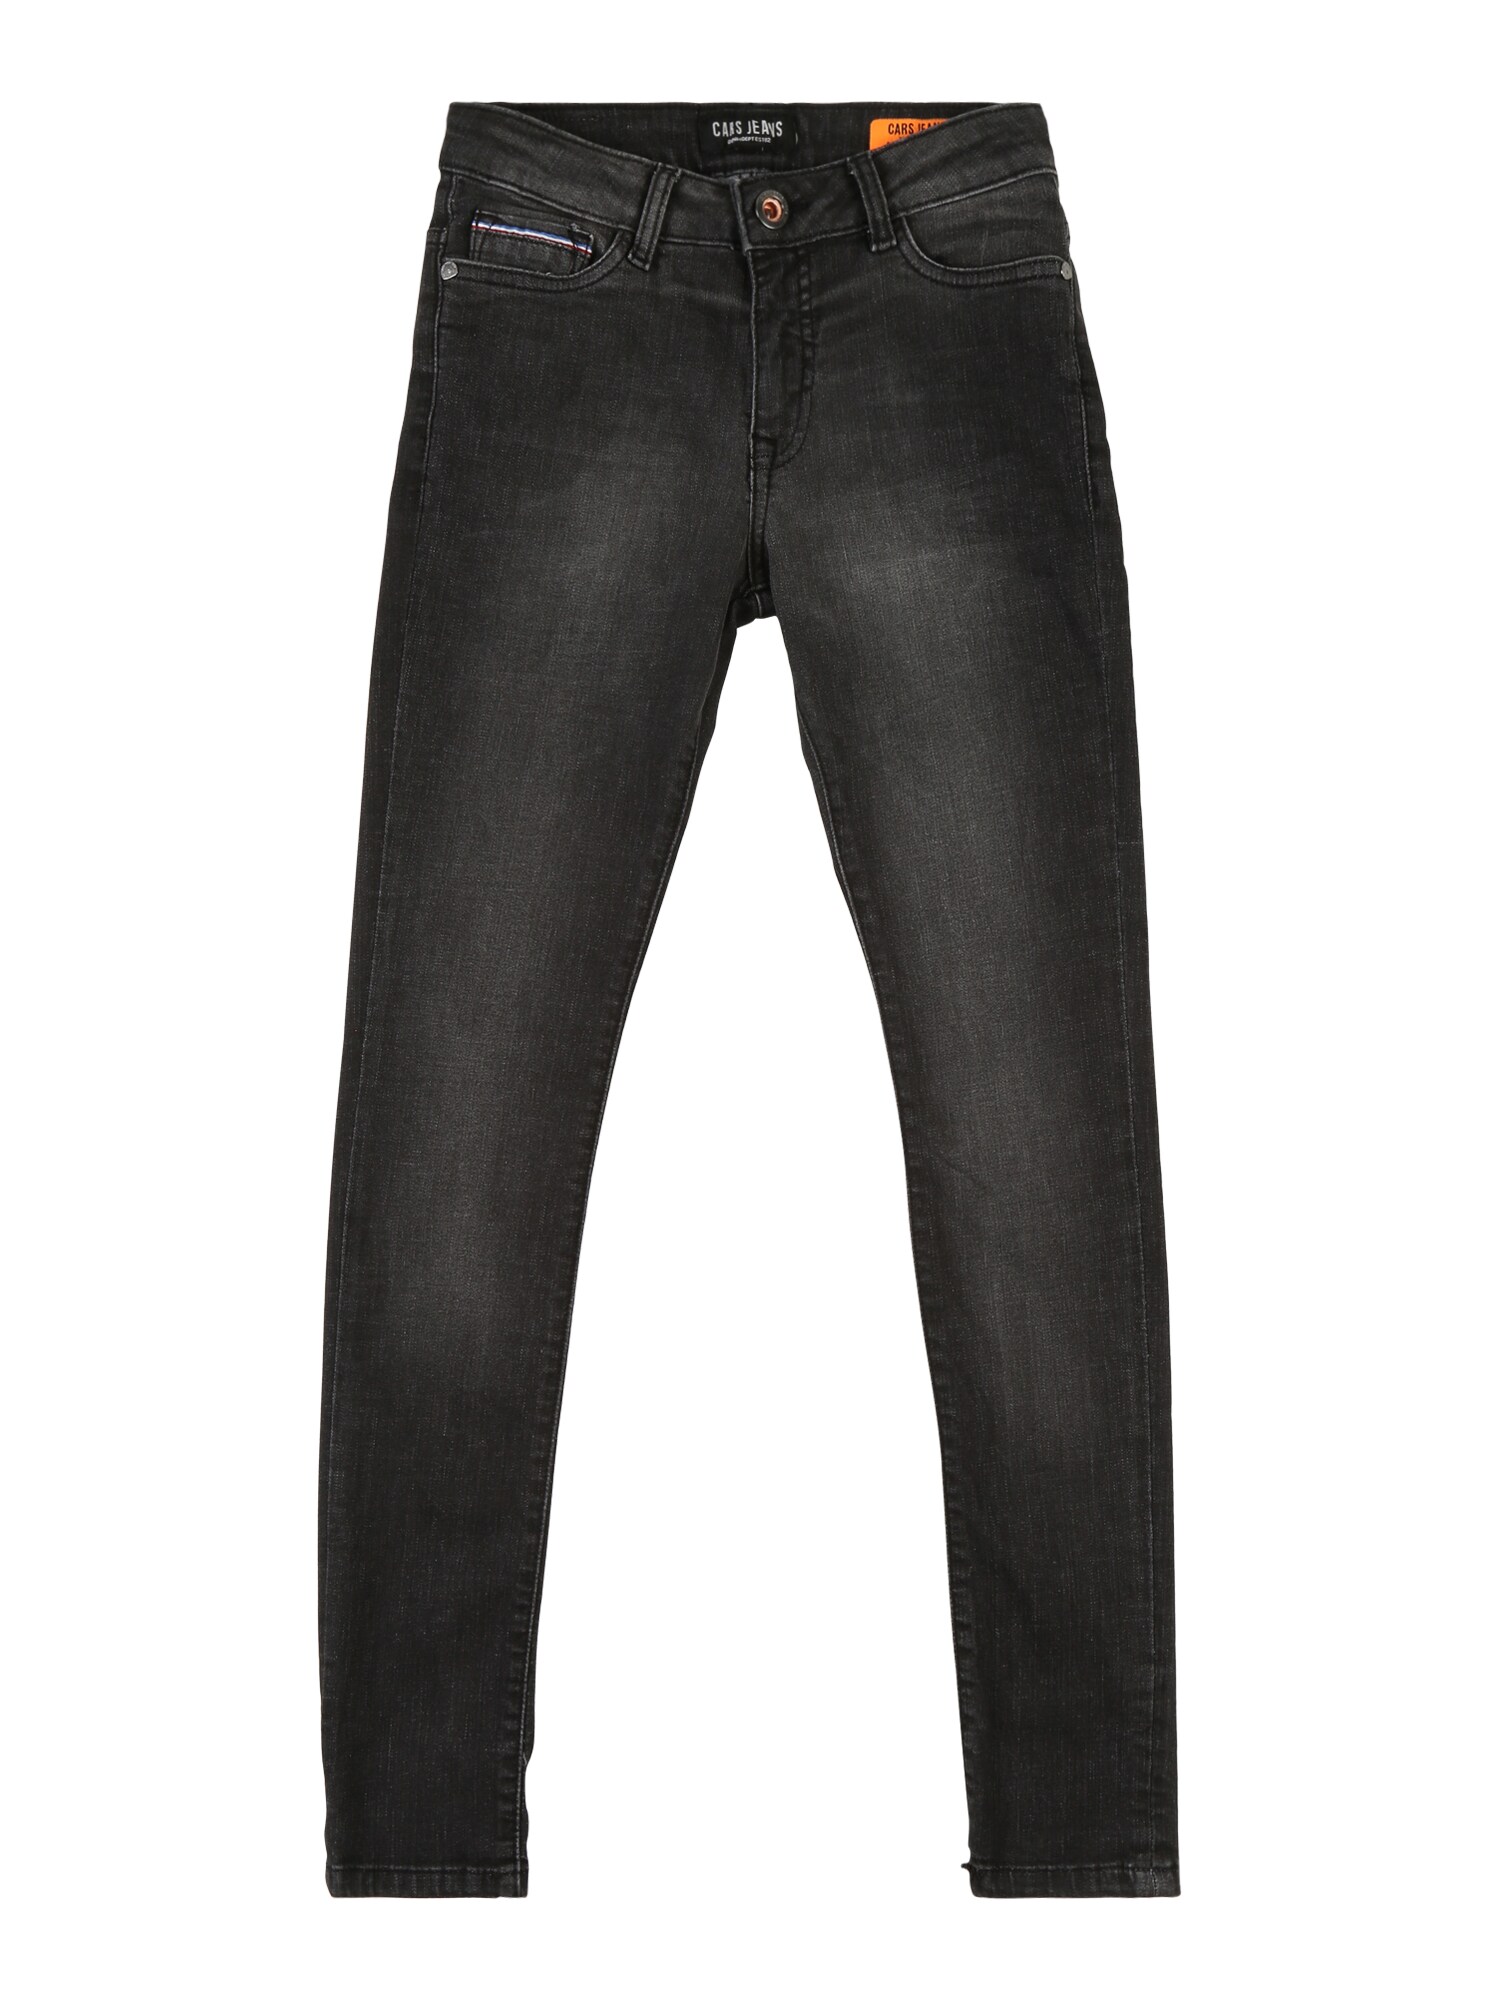 Cars Jeans Džinsai 'KIDS DIEGO'  juodo džinso spalva